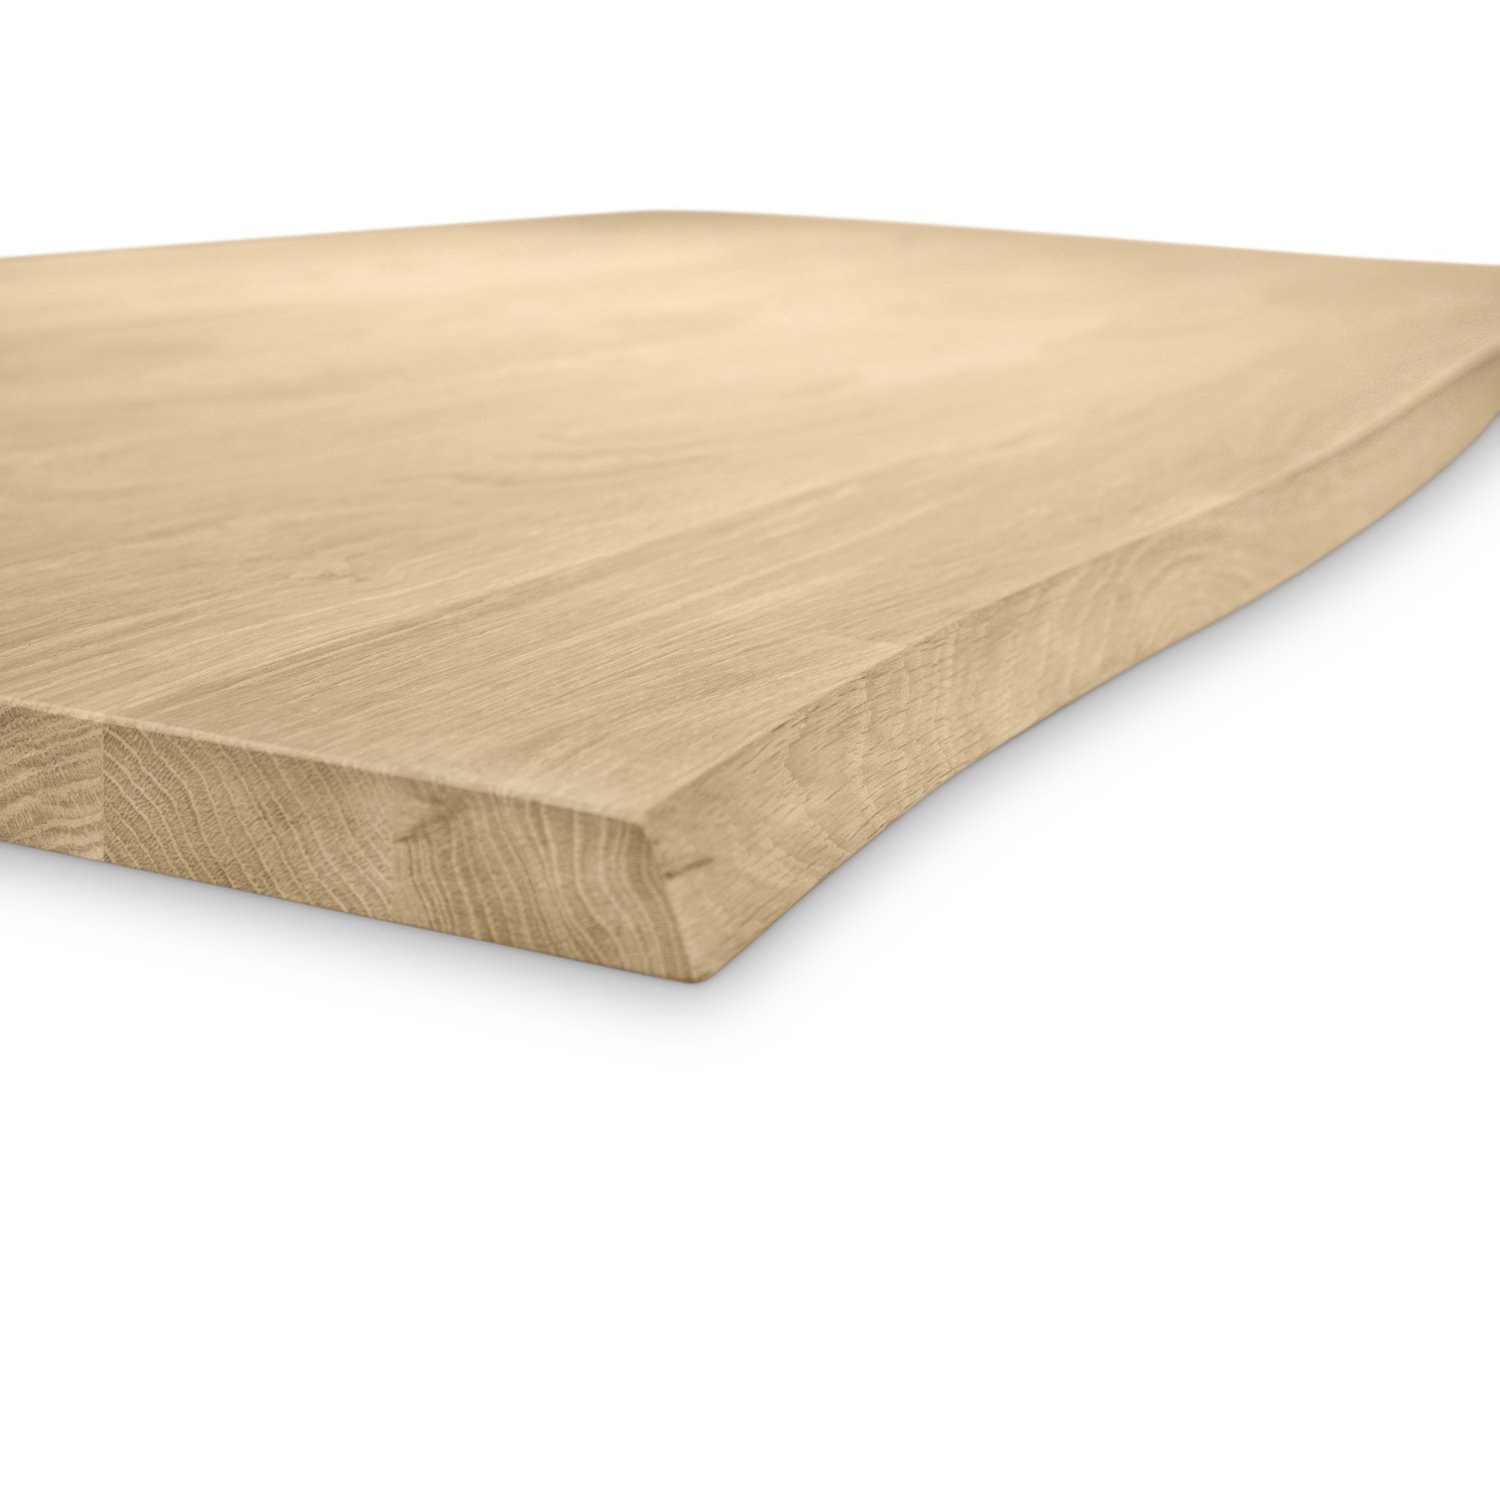  Eiken boomstam tafelblad - op maat - 3 cm dik (1-laag) - met boomstam rand / waankant LOOK - foutvrij Europees eikenhout - verlijmd kd 8-12% - 50-120x50-300 cm